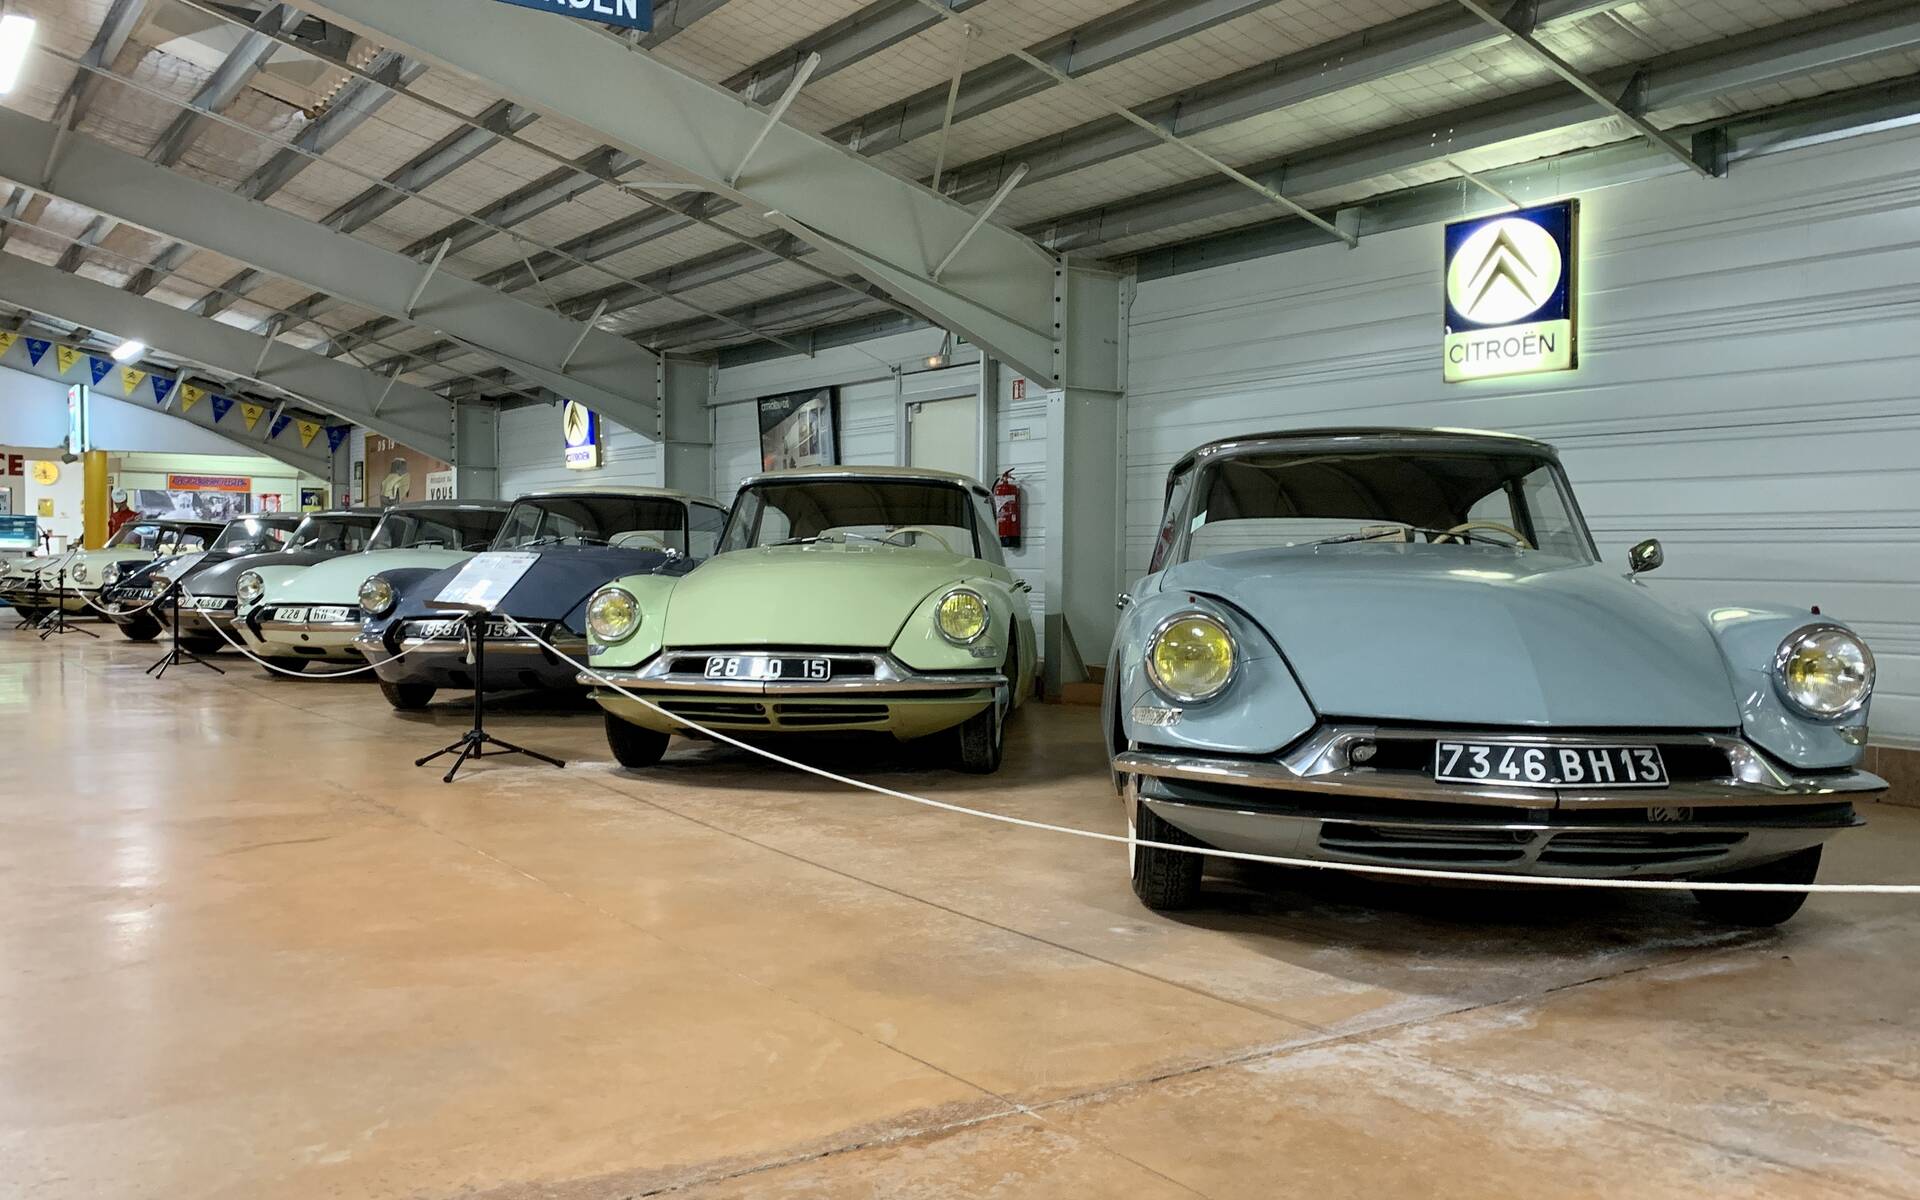 Photos: plus de 100 Citroën d'exception réunies dans un musée en France 543090-photos-plus-de-100-citroen-d-exception-reunies-dans-un-musee-en-france